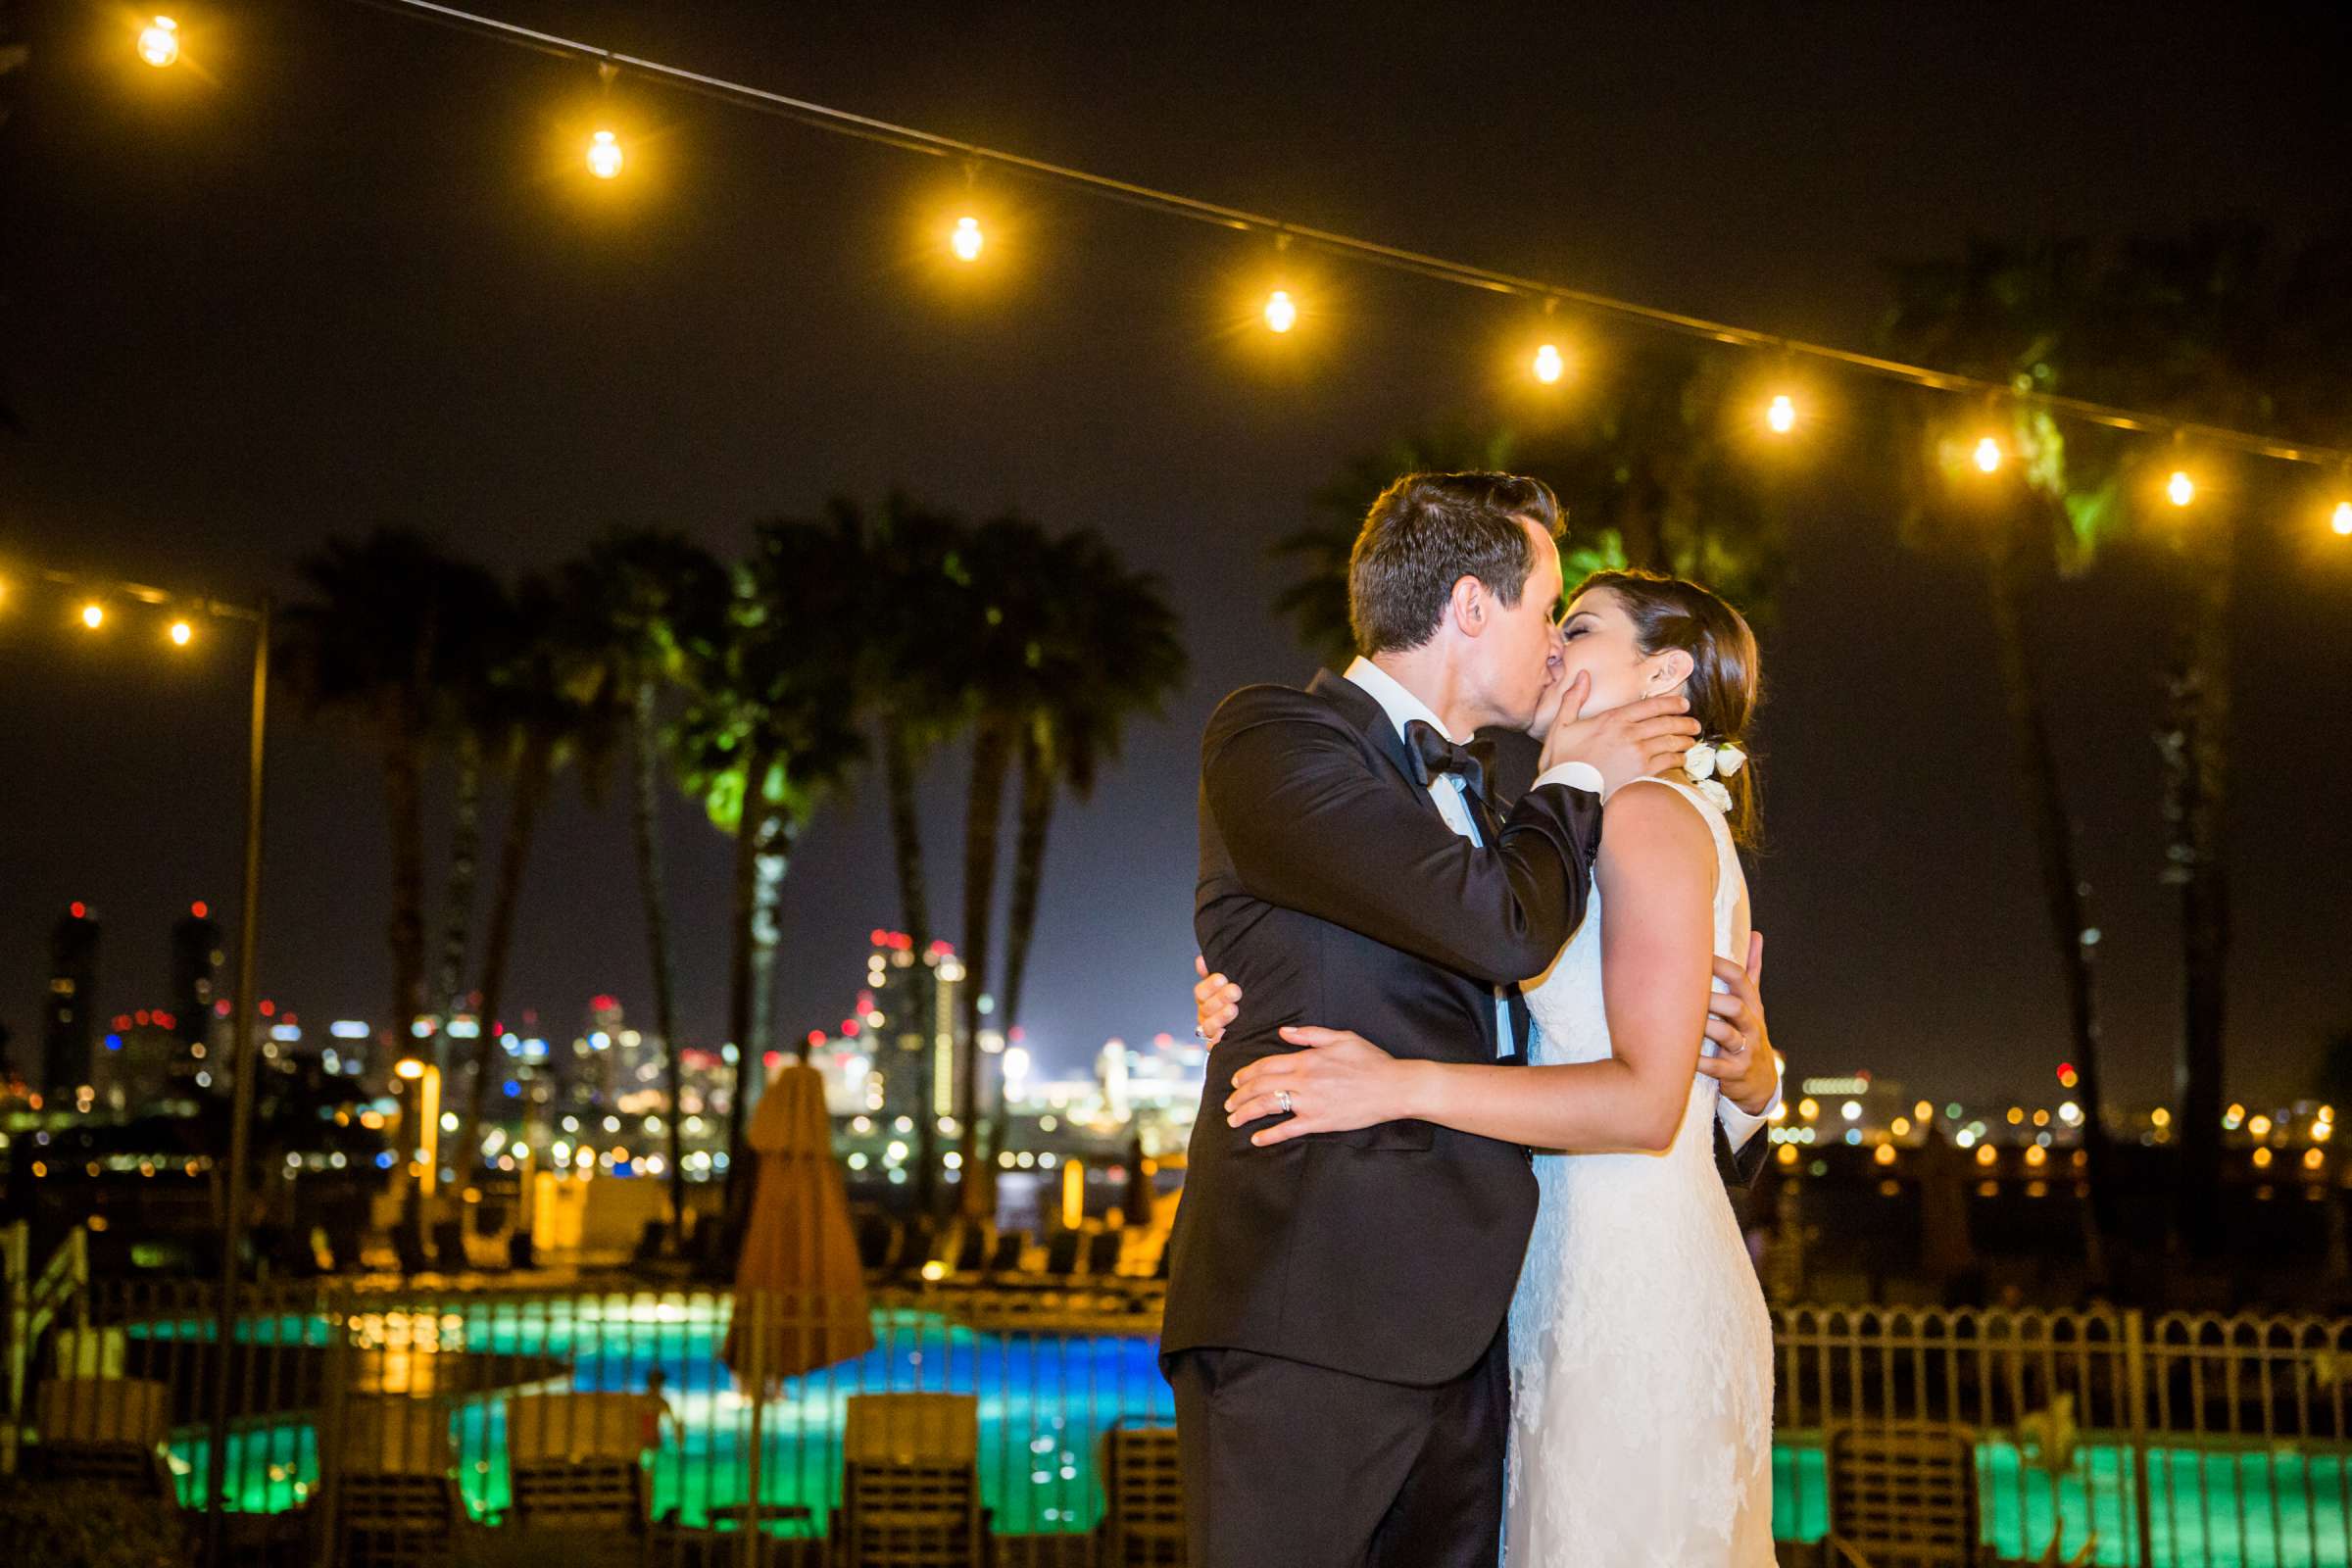 Coronado Island Marriott Resort & Spa Wedding, Alicia and Benjamin Wedding Photo #157067 by True Photography